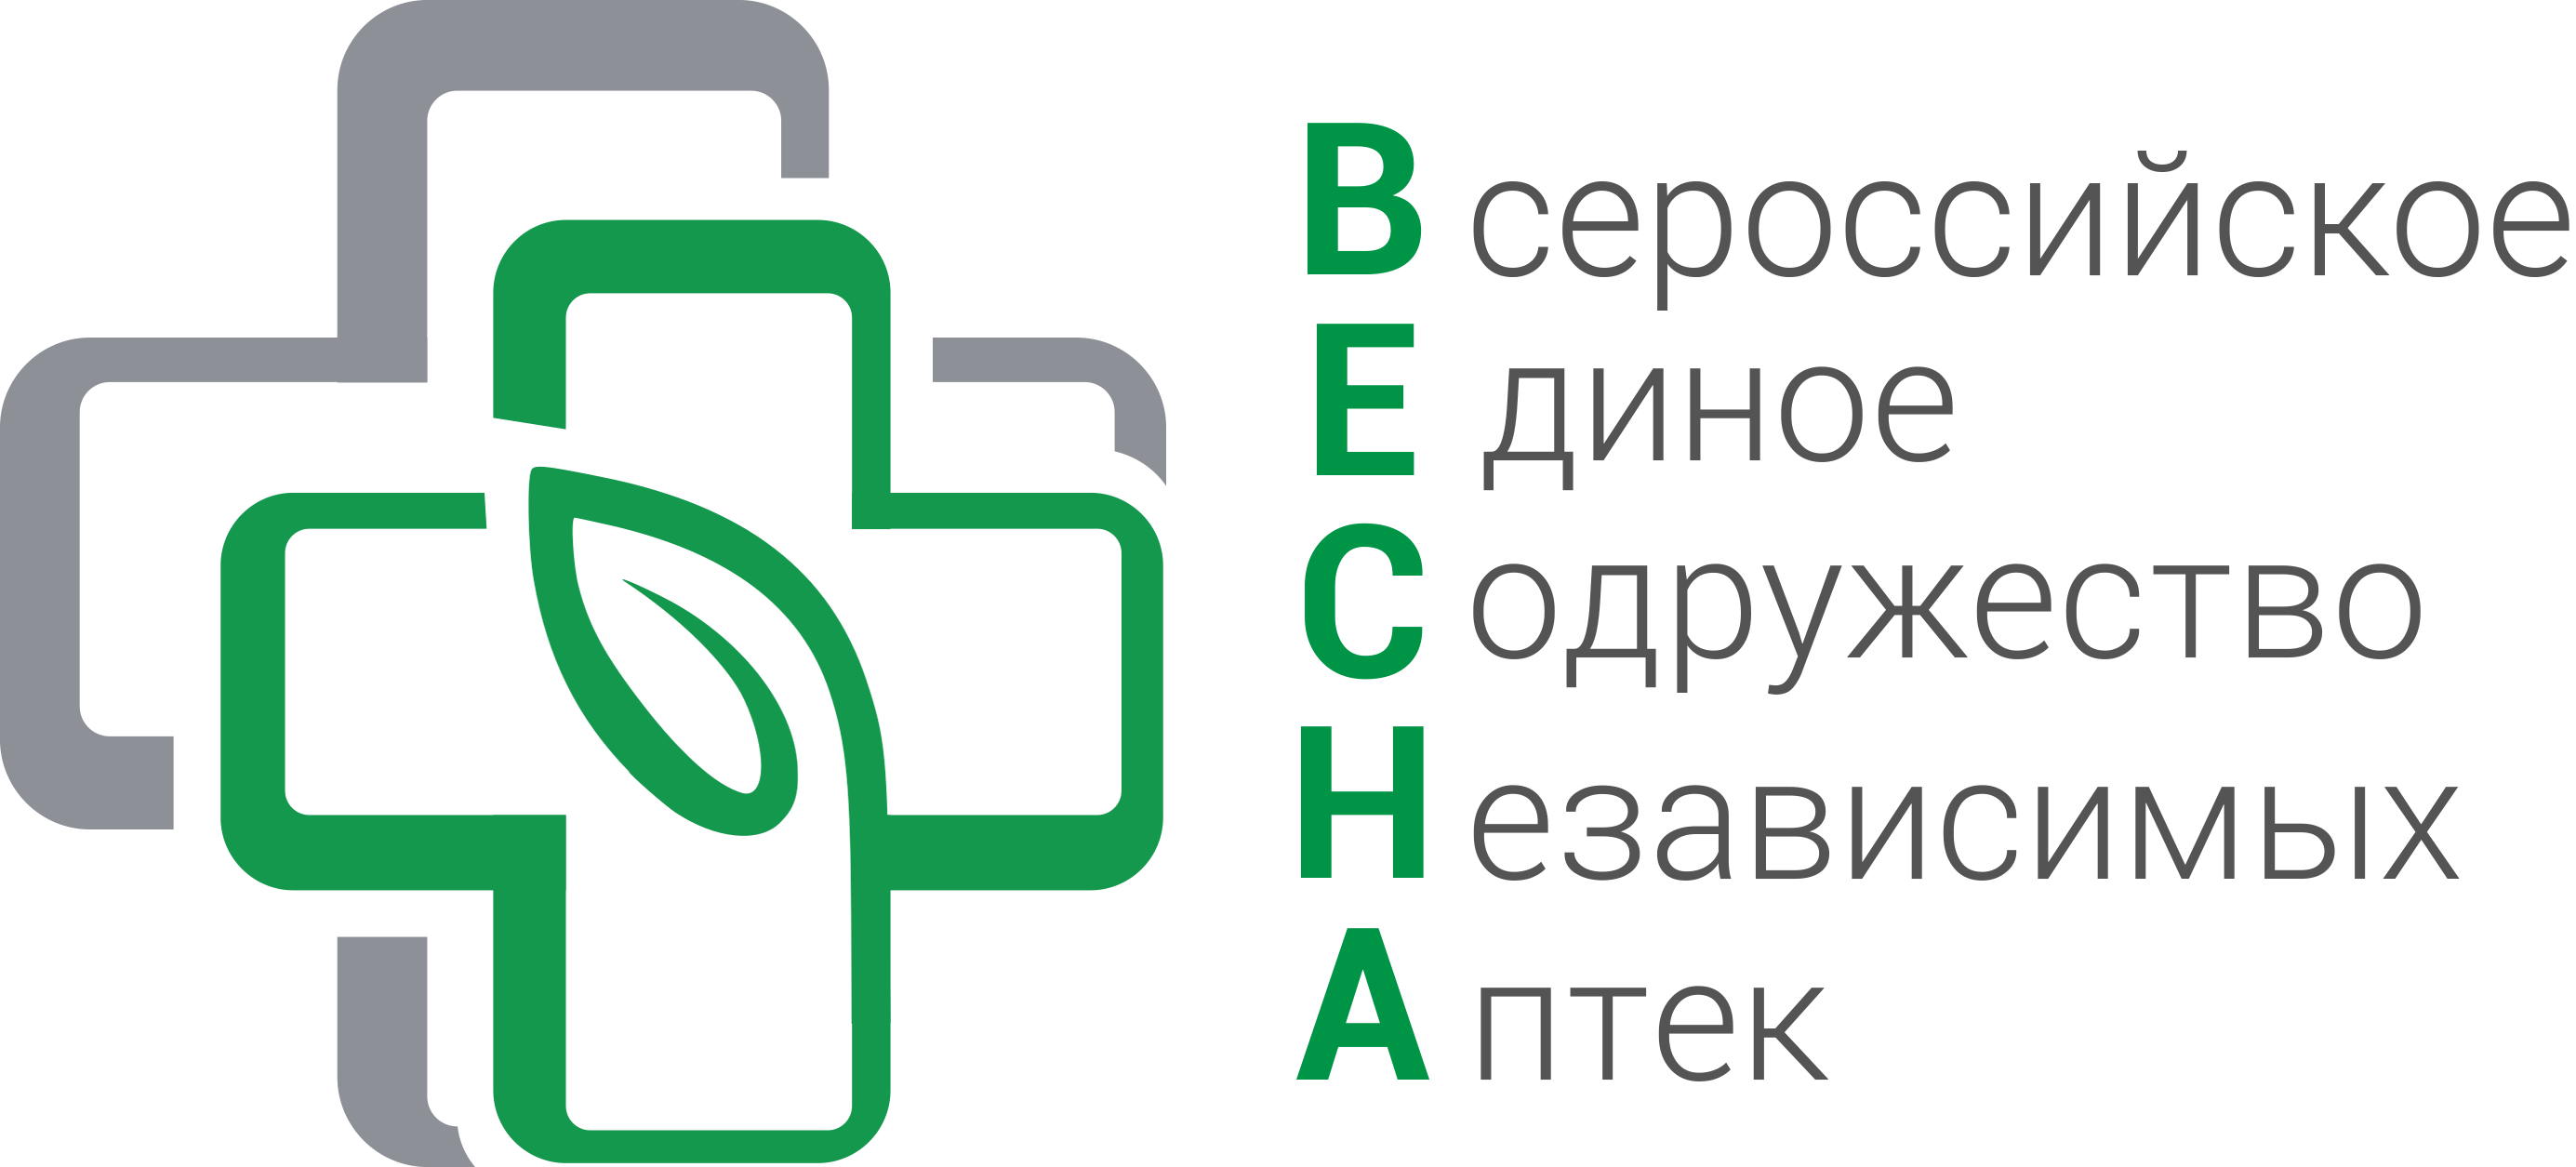 Всероссийское Единое Содружество Независимых Аптек